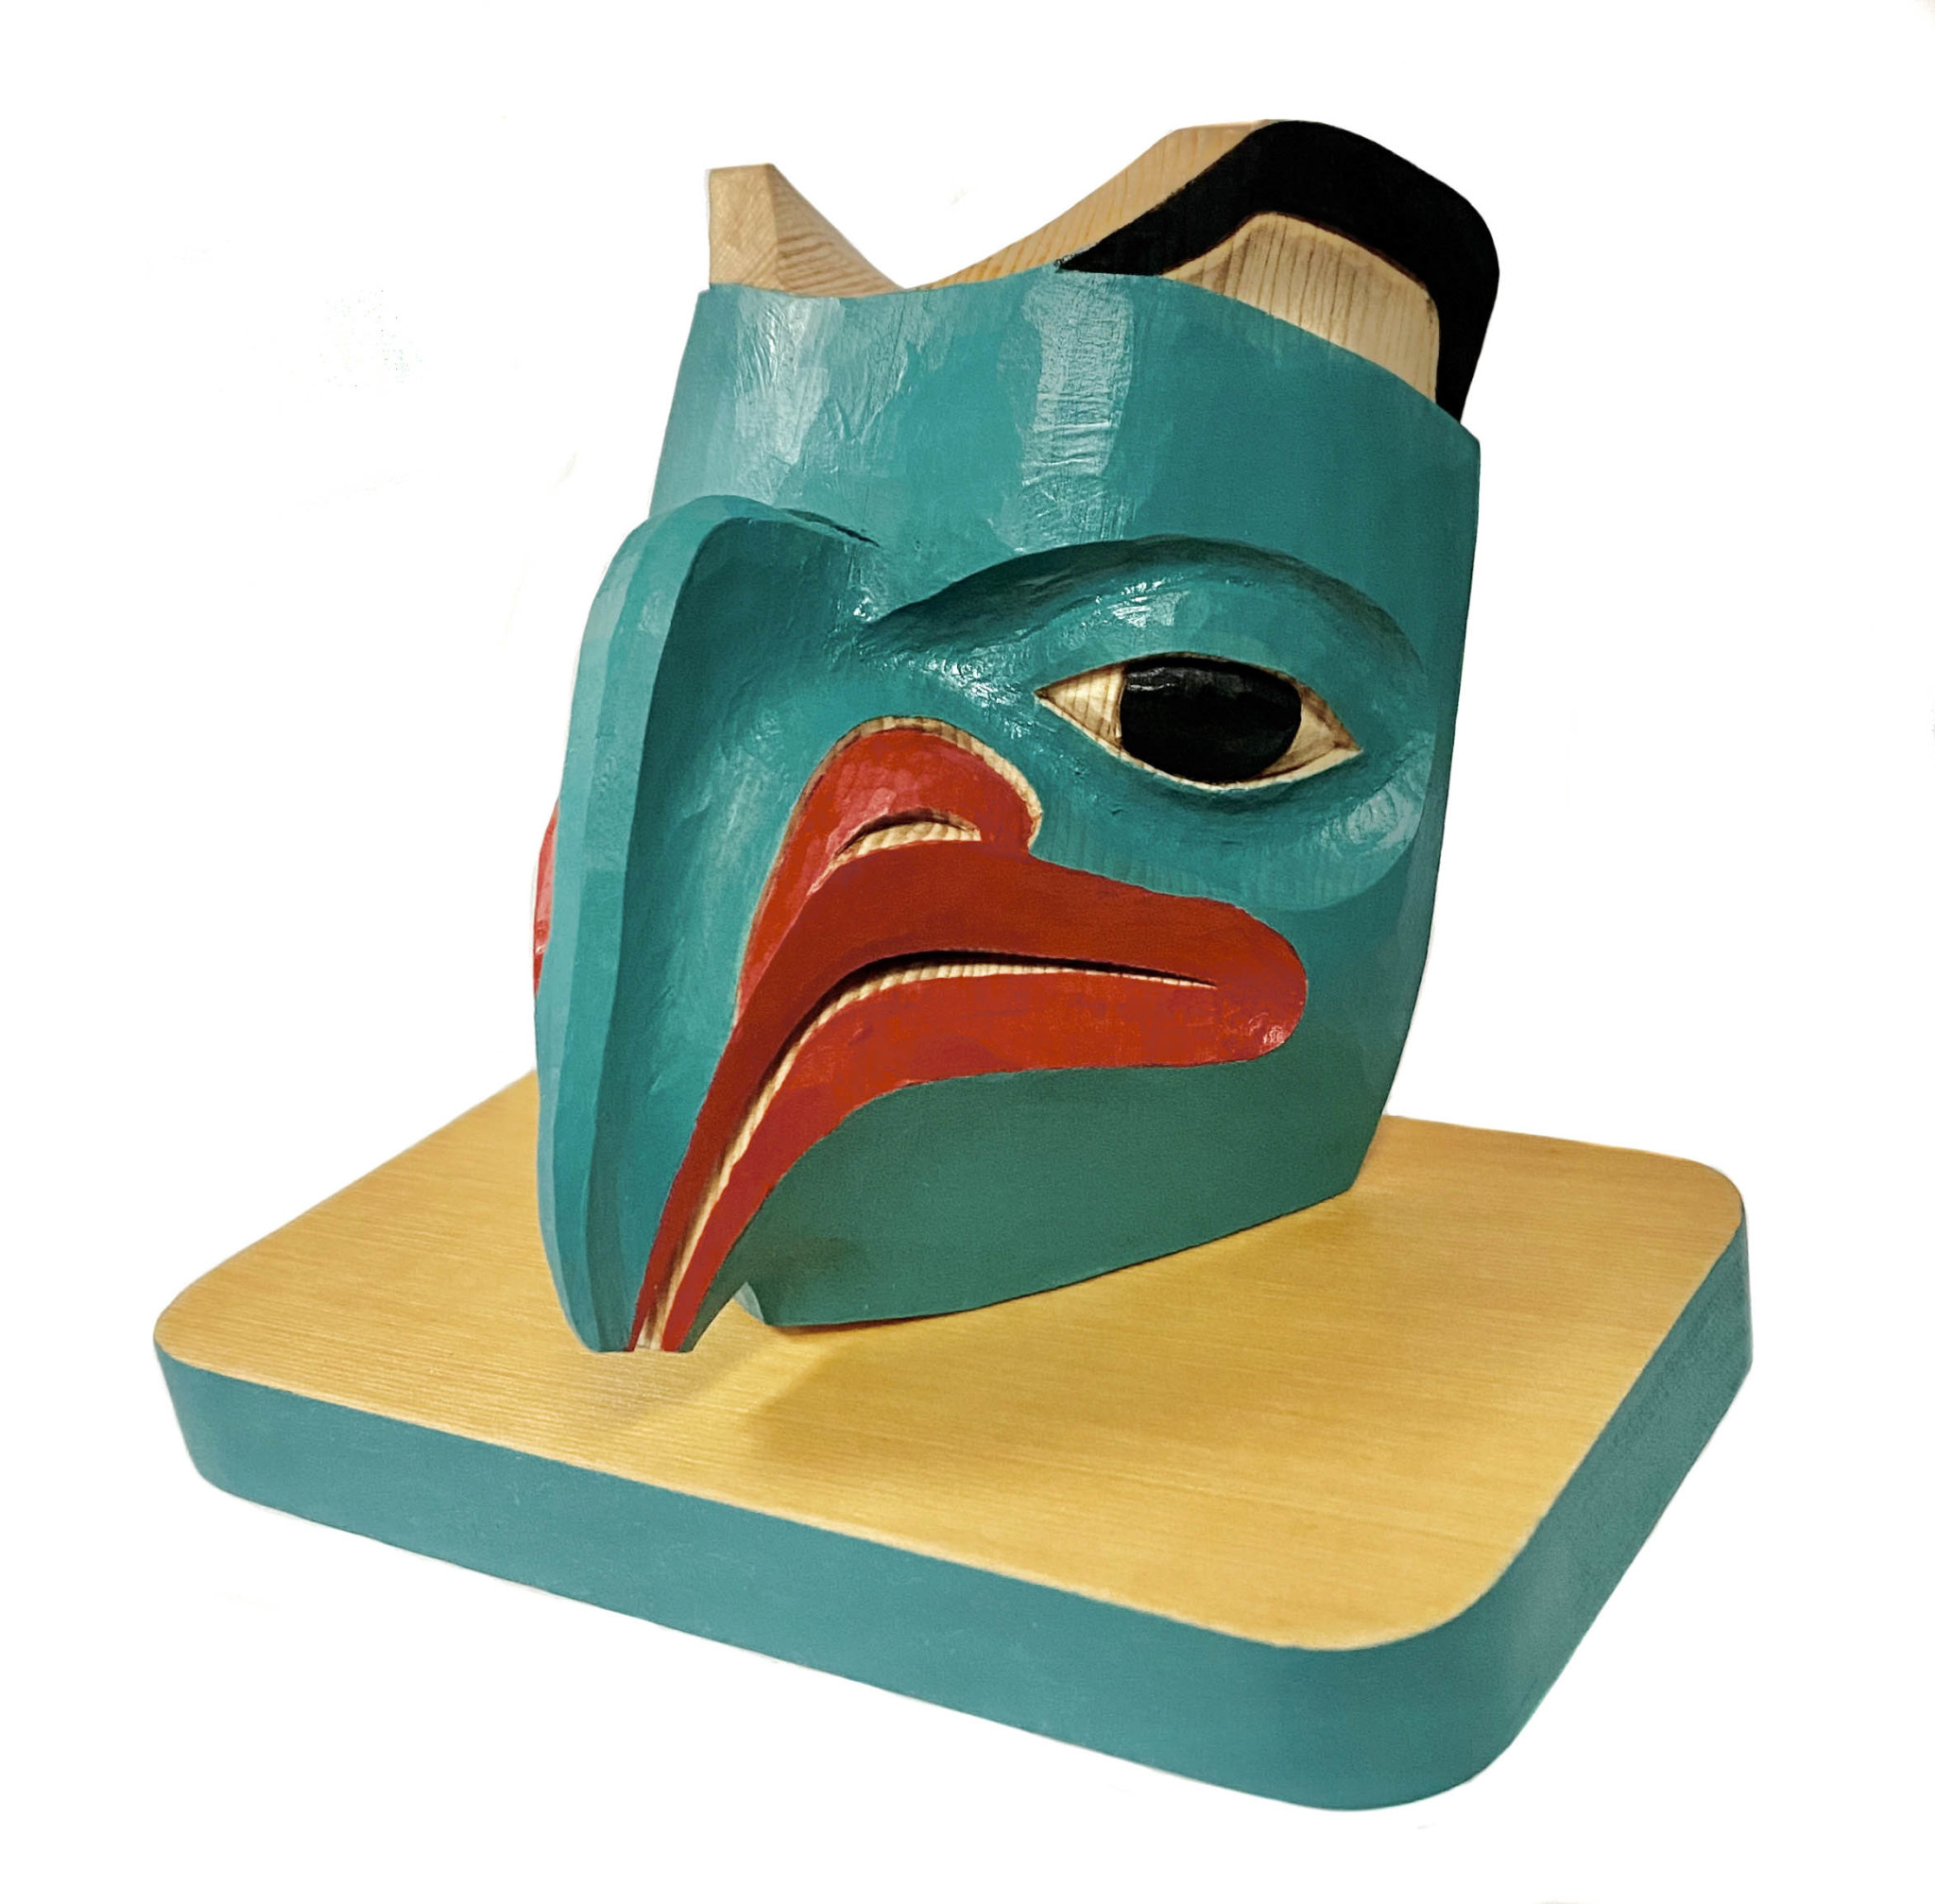 Miniature Tlingit Eagle Mask on Stand